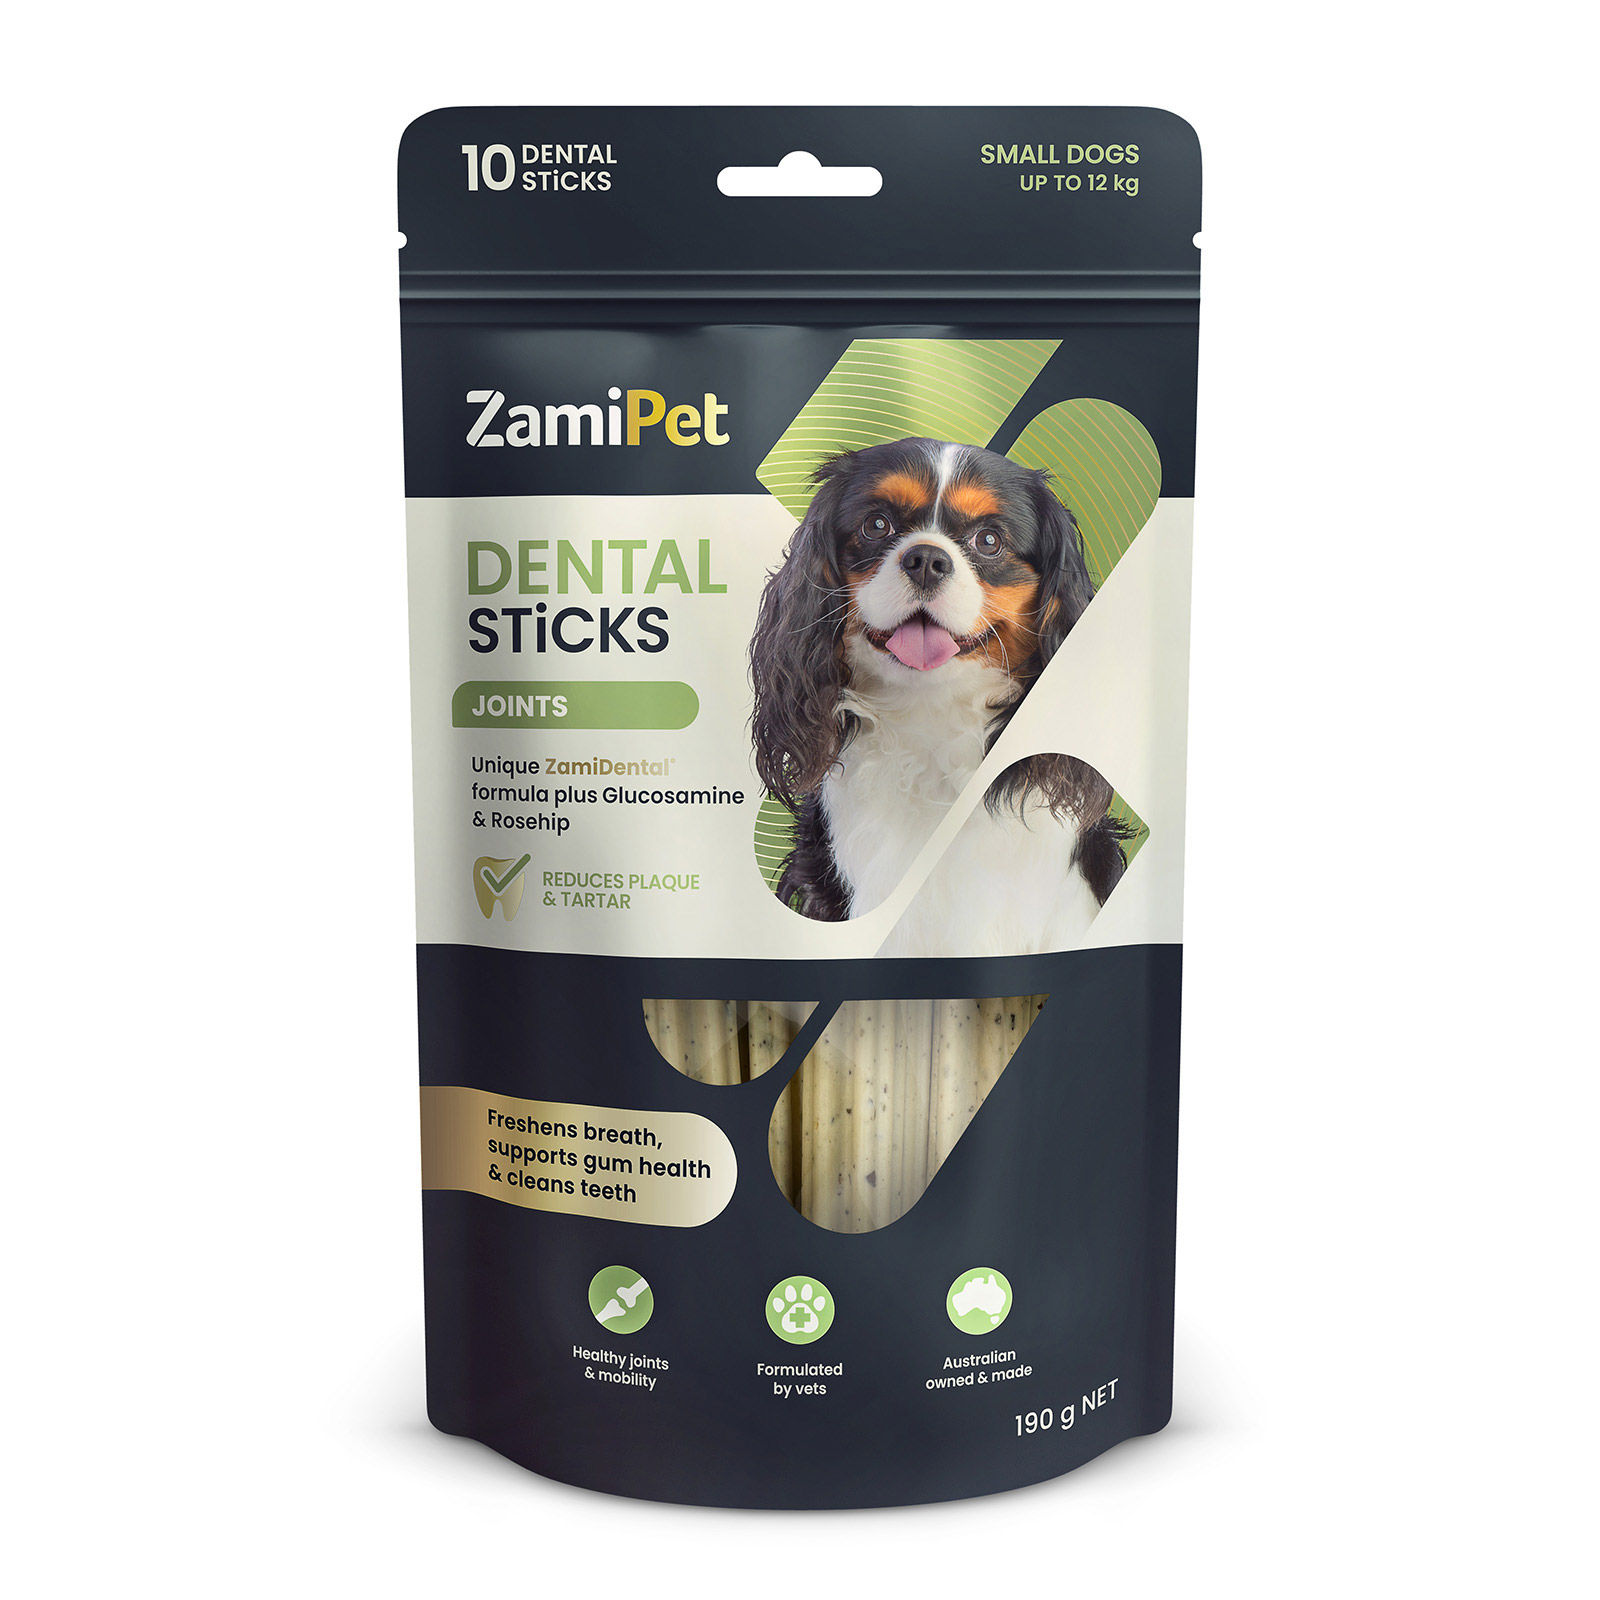 ZamiPet Dental Sticks Joint Dog Treats for Dogs